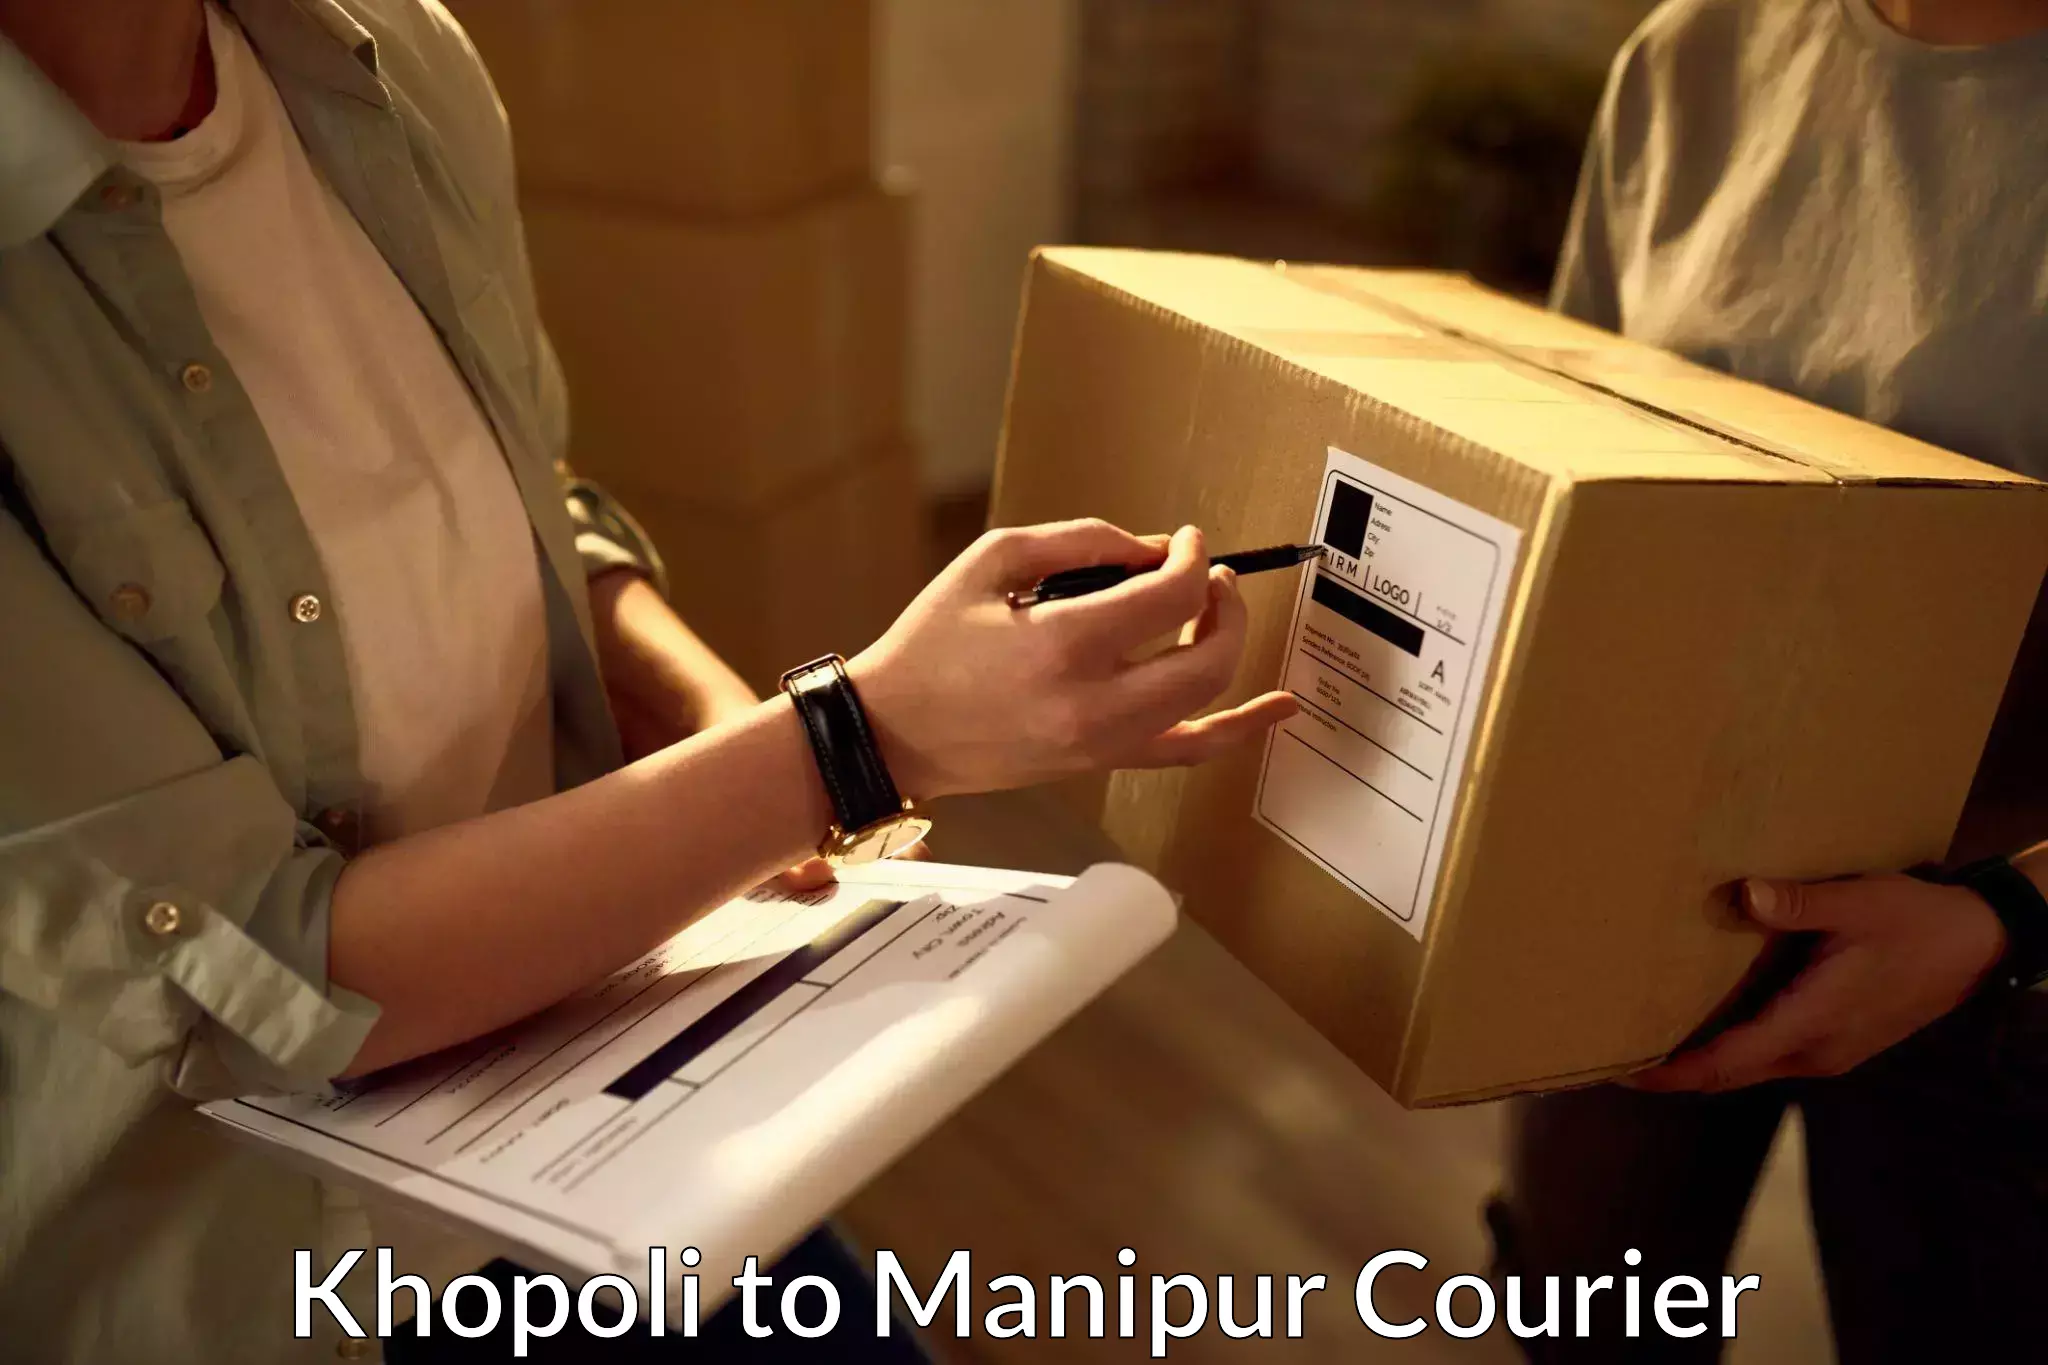 Nationwide delivery network Khopoli to Moirang